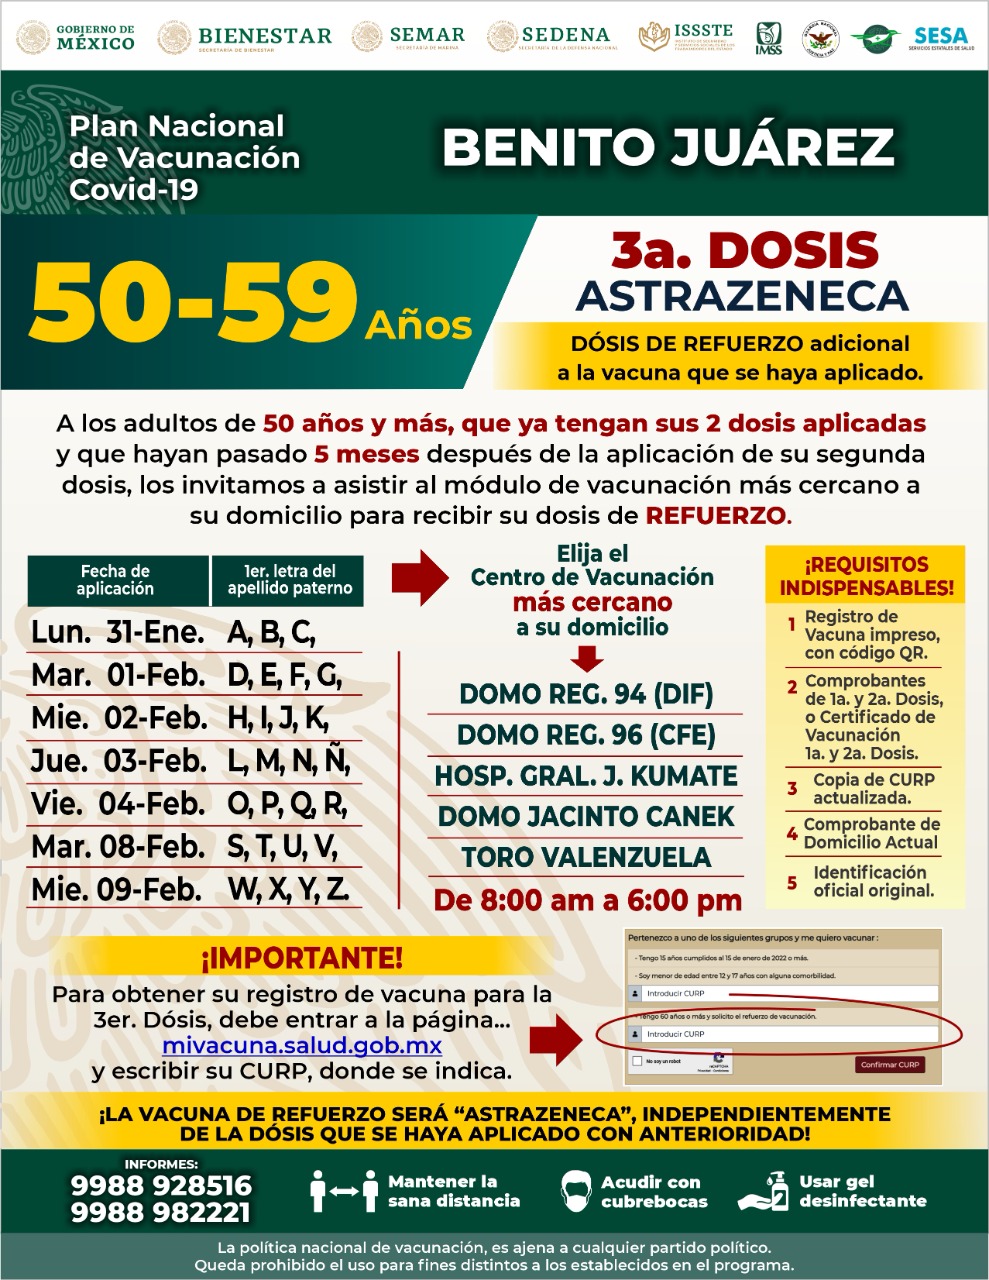 Aplican vacuna de refuerzo en adultos de 40-59 años en Quintana Roo